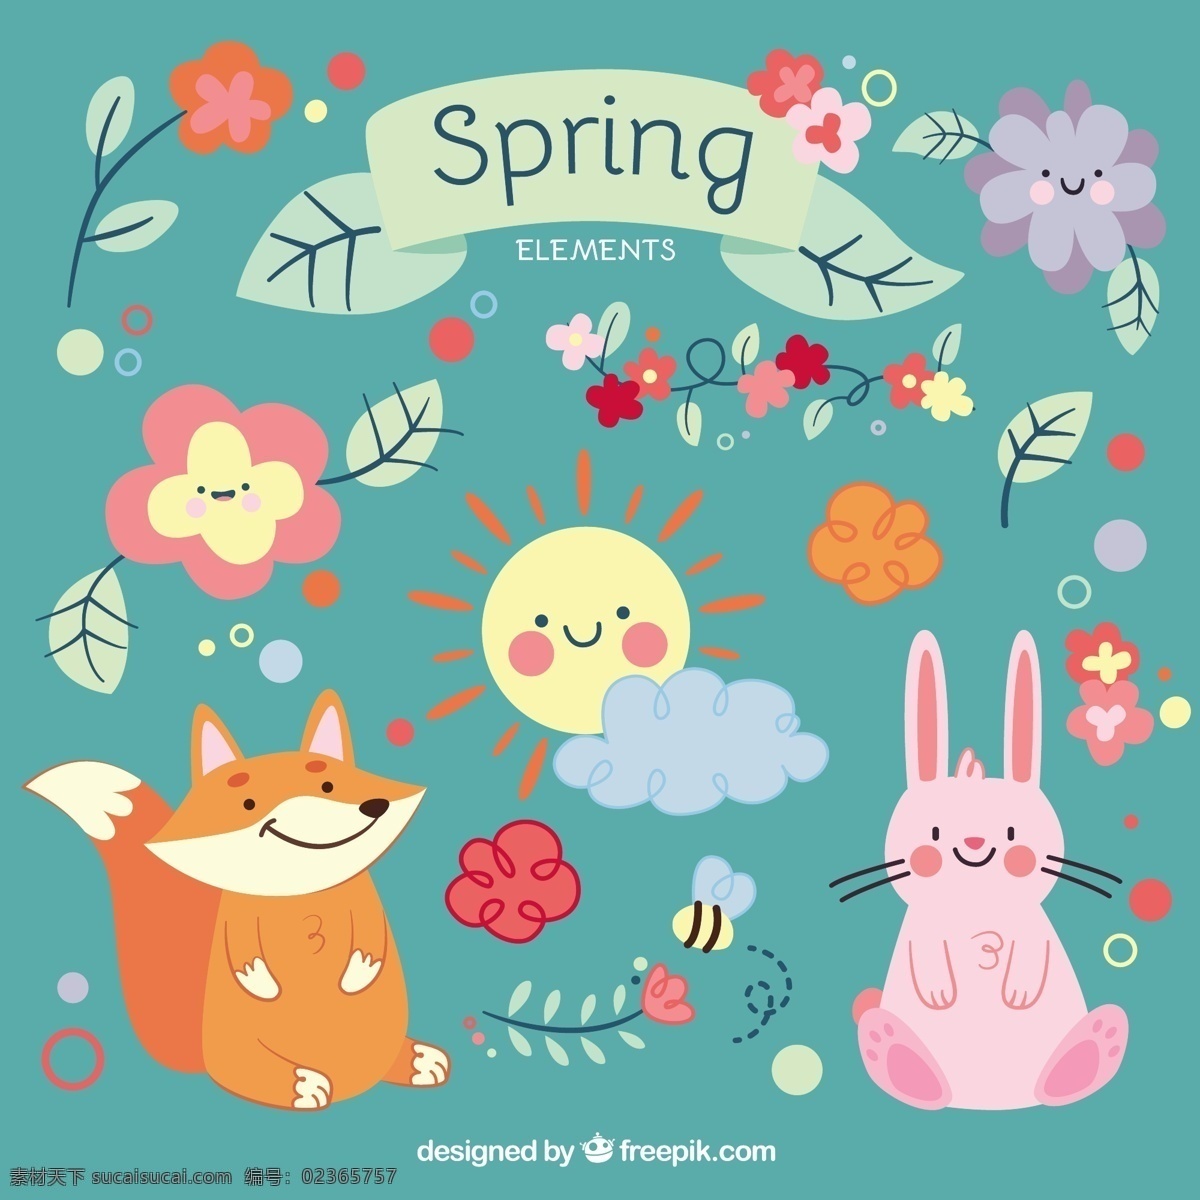 可爱 的卡 通 动物 花卉 鲜花 阳光 自然 叶 卡通 春 可爱的蜜蜂 多彩 植物 兔 狐 元素 花 青色 天蓝色